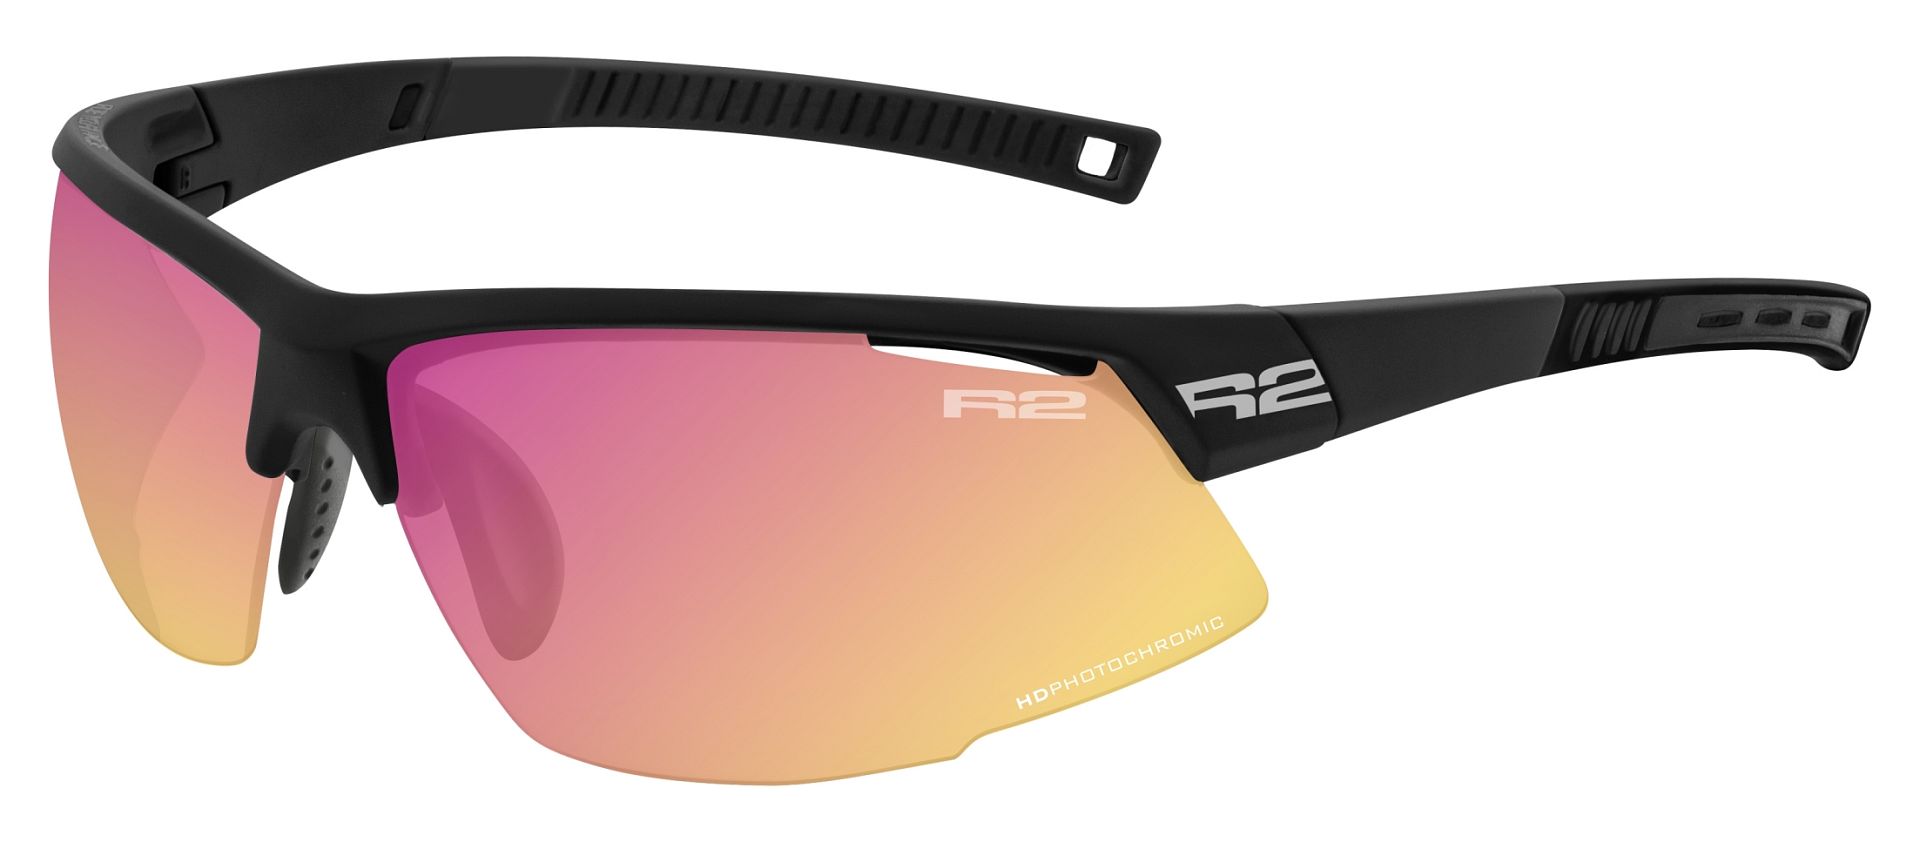 Fotochromatické brýle R2 RACER AT063A9 černá/oranžová